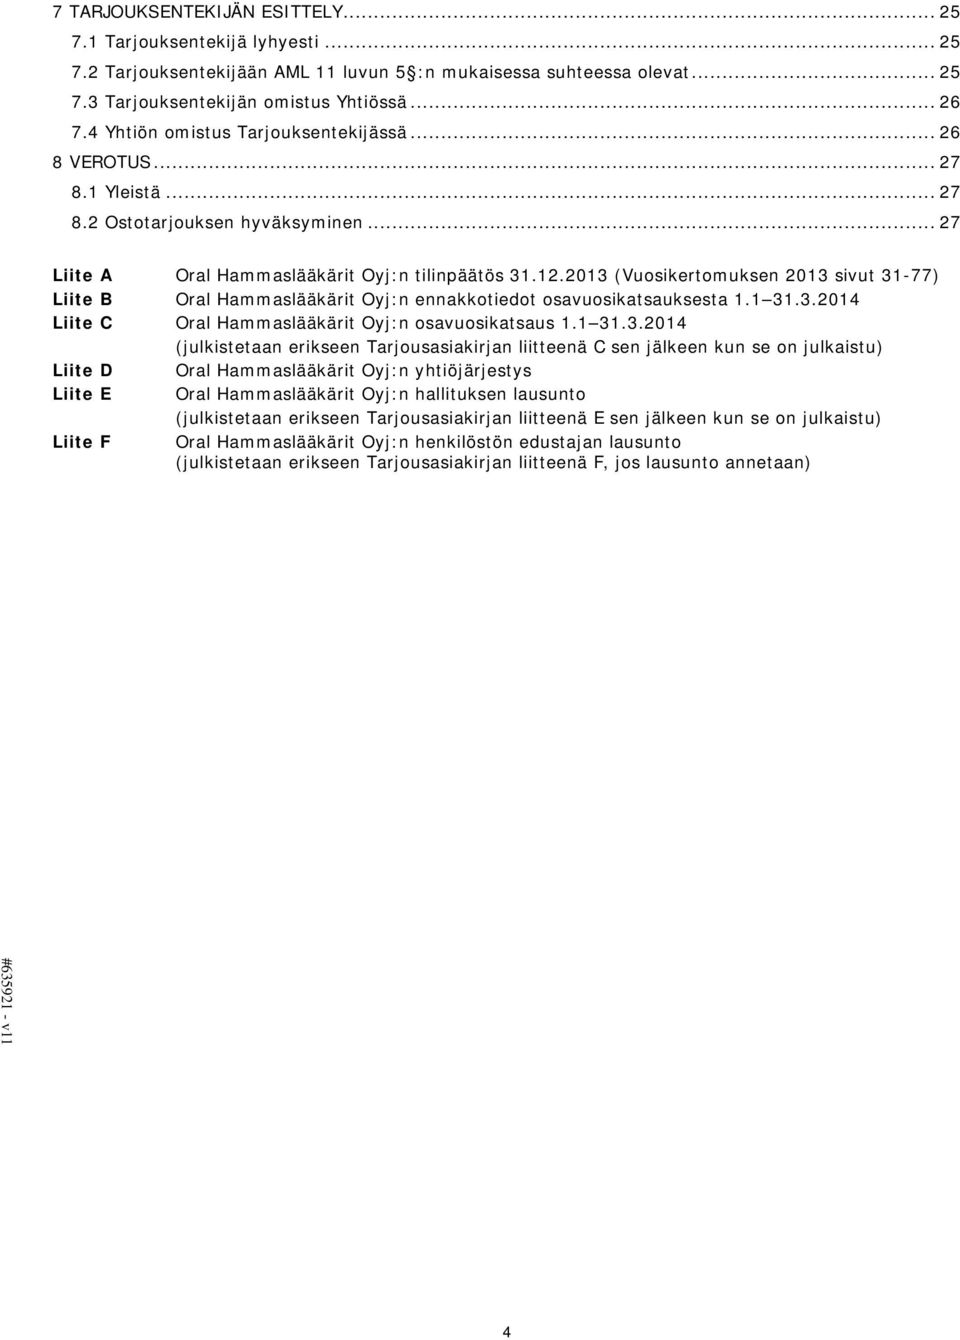 2013 (Vuosikertomuksen 2013 sivut 31-77) Liite B Oral Hammaslääkärit Oyj:n ennakkotiedot osavuosikatsauksesta 1.1 31.3.2014 Liite C Oral Hammaslääkärit Oyj:n osavuosikatsaus 1.1 31.3.2014